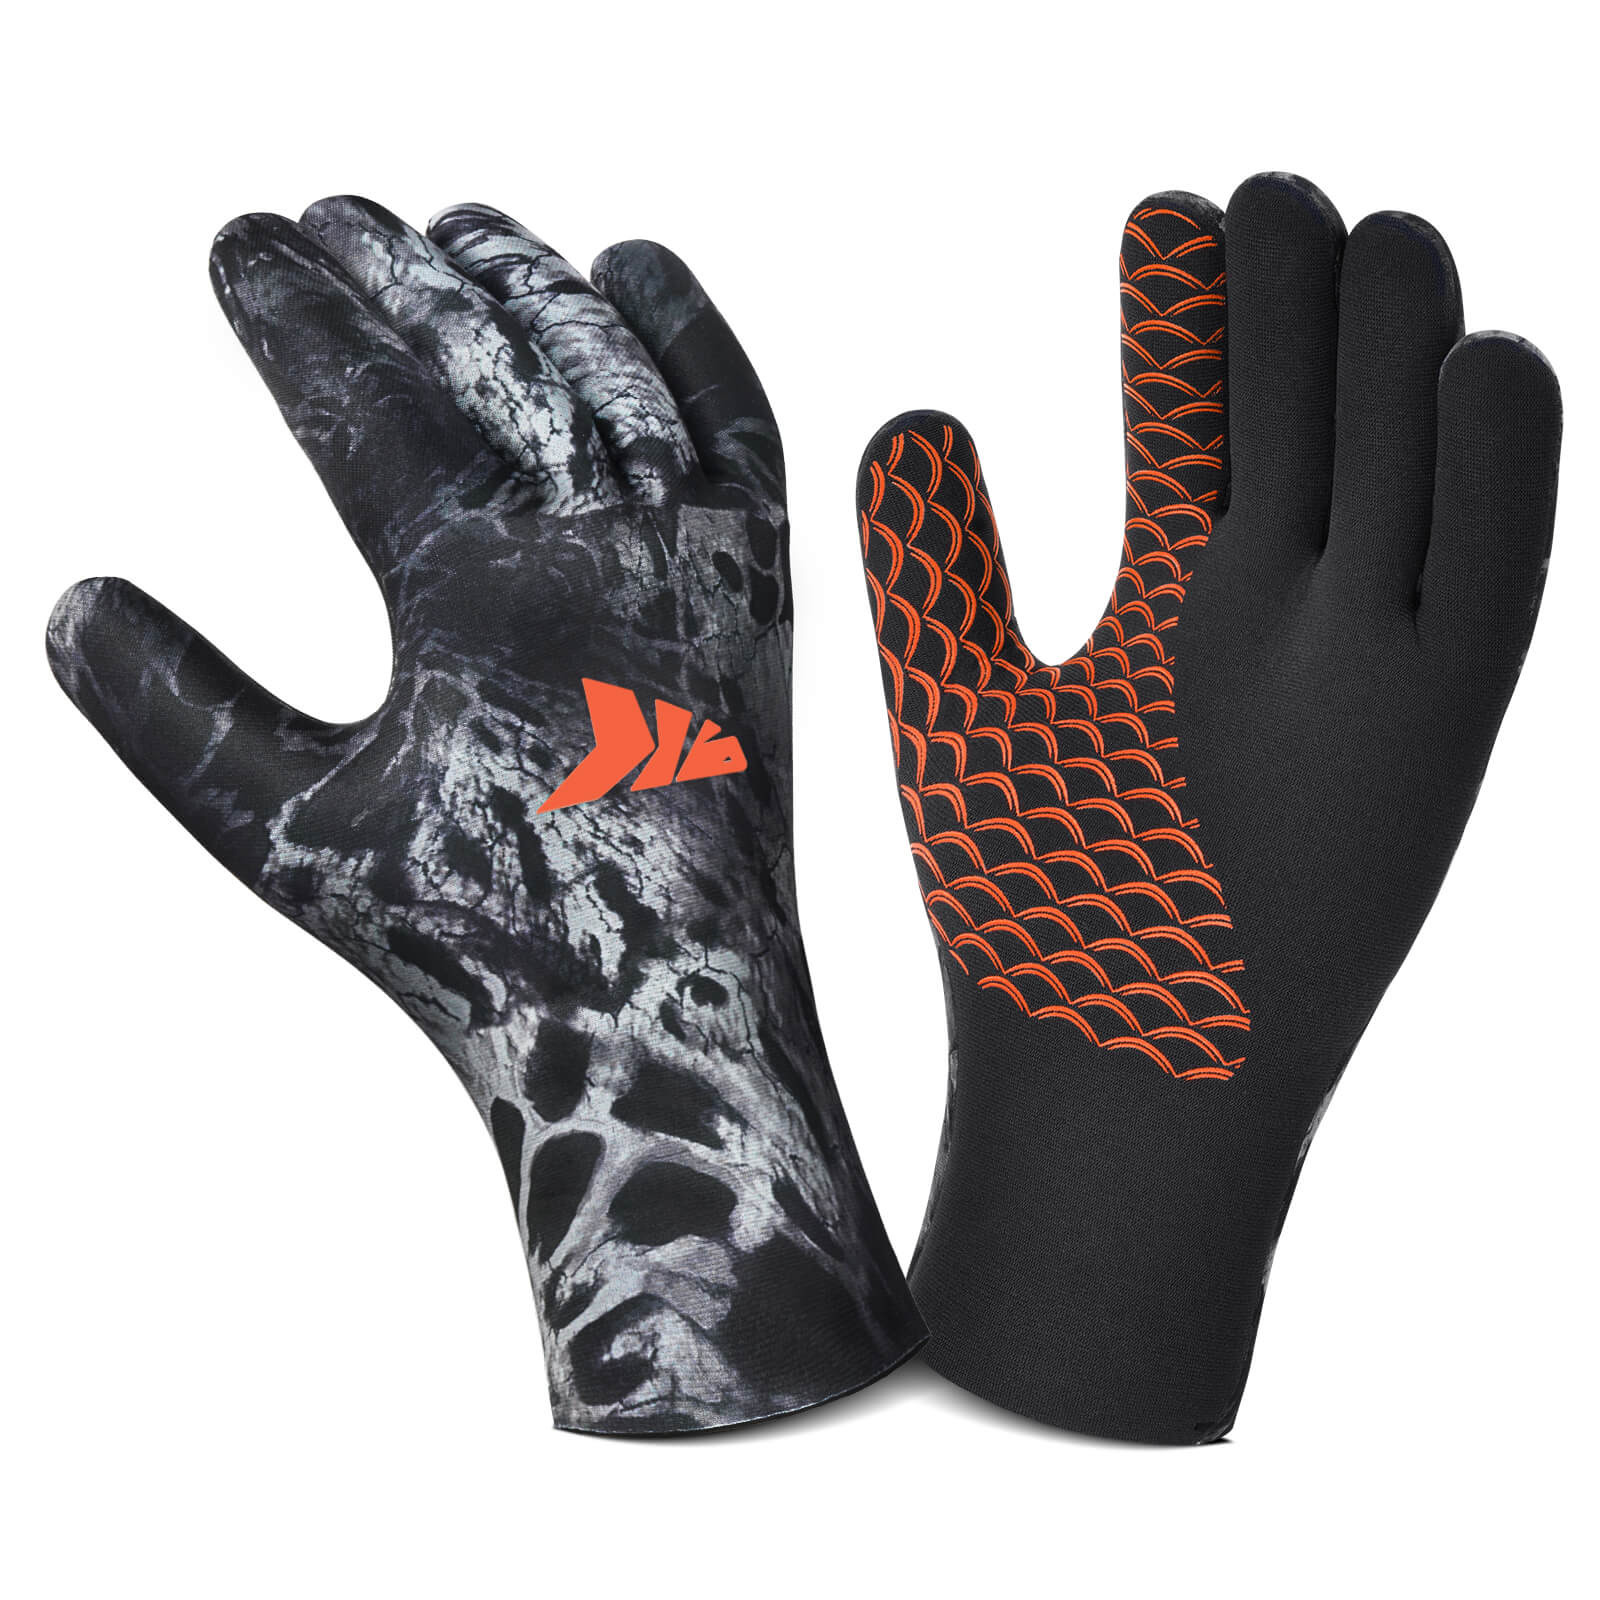 Black Ops KAST Steelhead Gloves